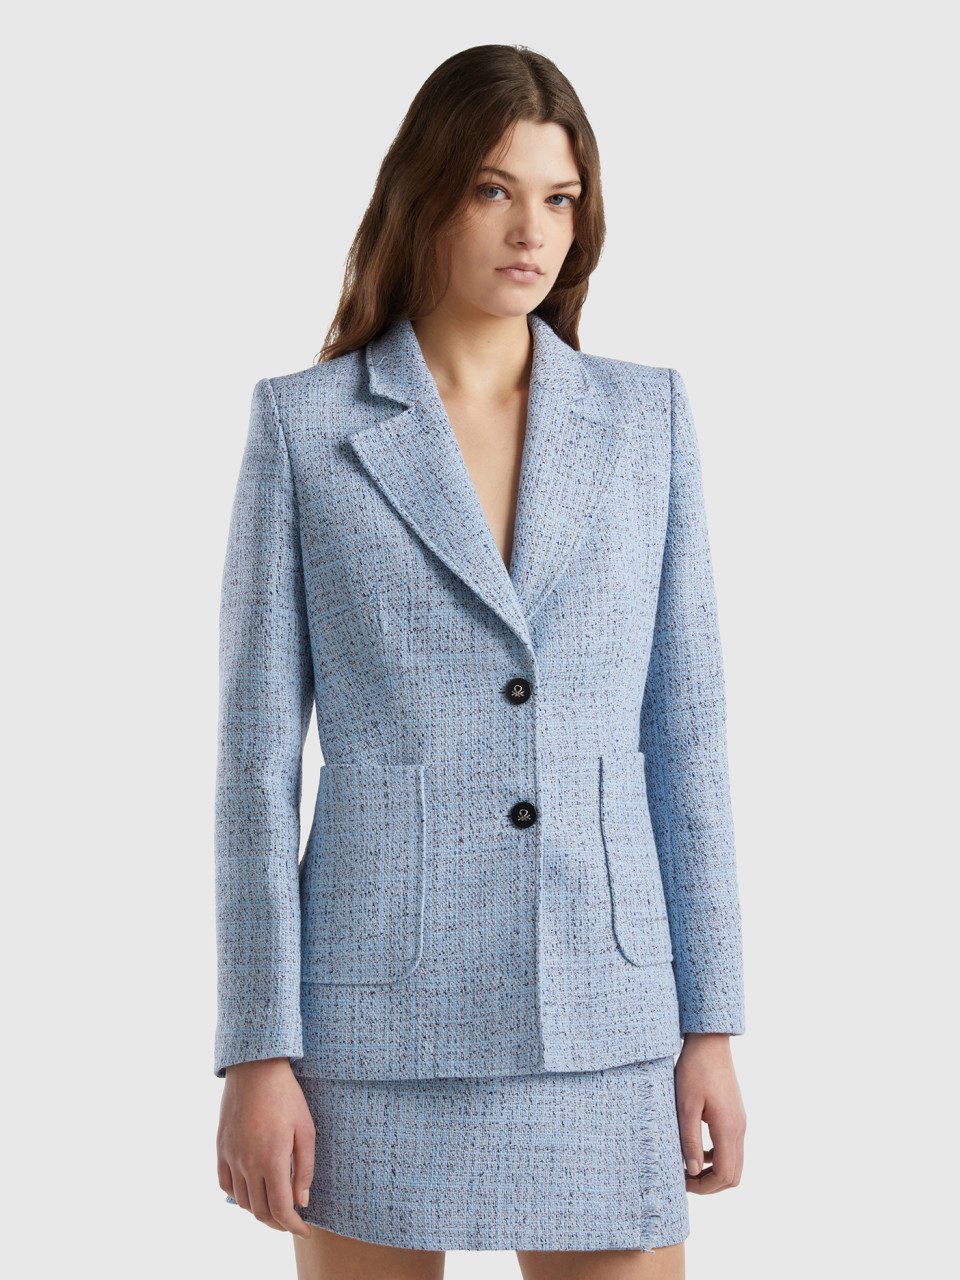 Benetton, Taillierter Tweed-blazer, Azurblau, female